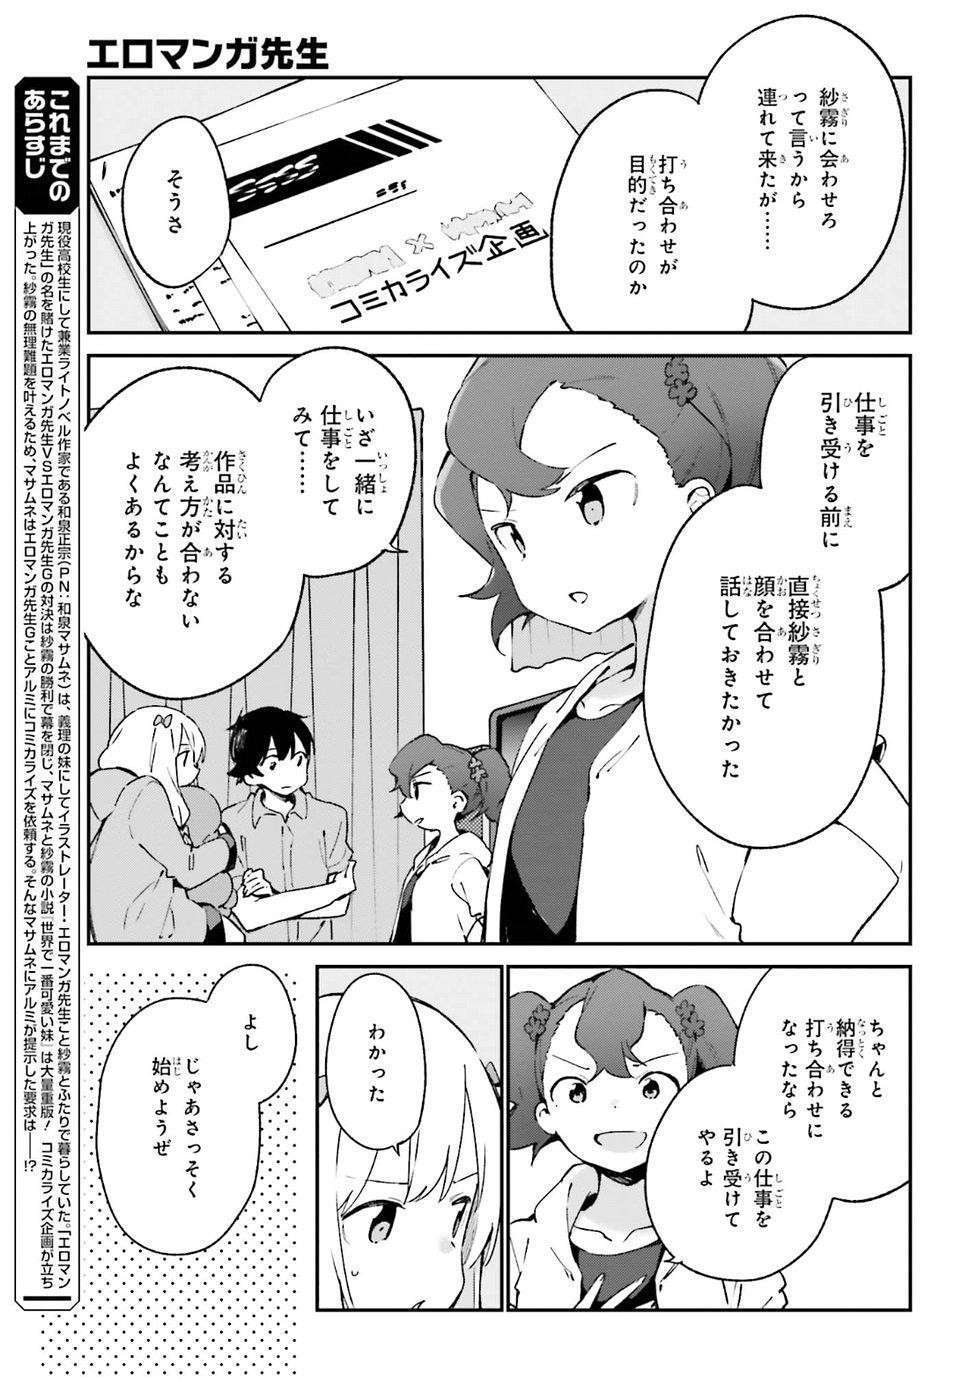 Ero Manga Sensei - Chapter 49 - Page 3